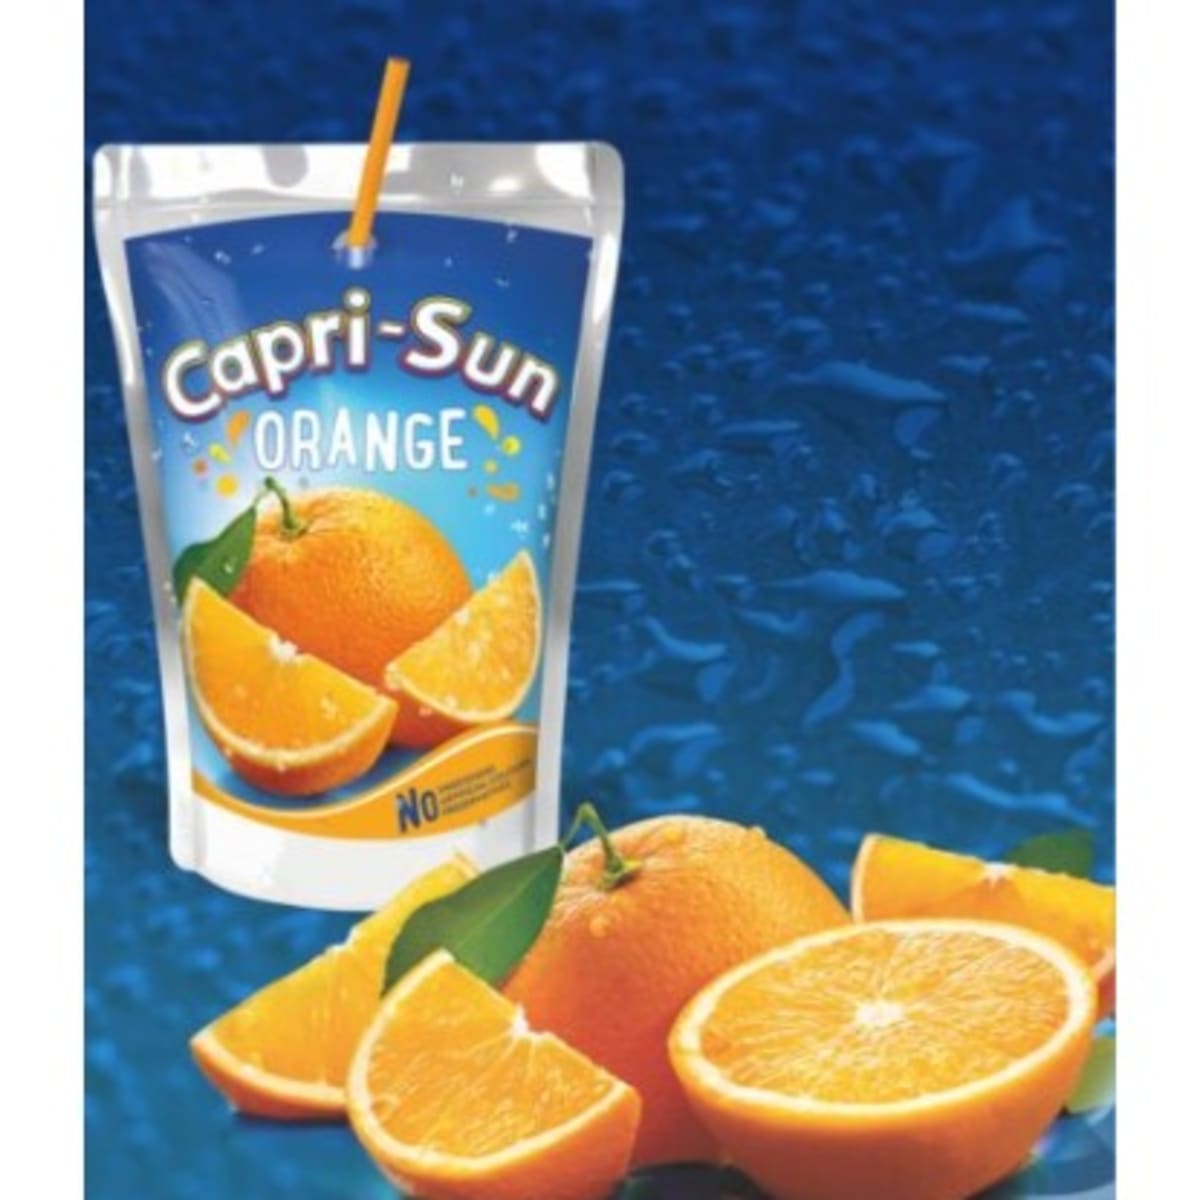 Capri-Sun Nigeria  Refreshing Fruit Juice Drinks